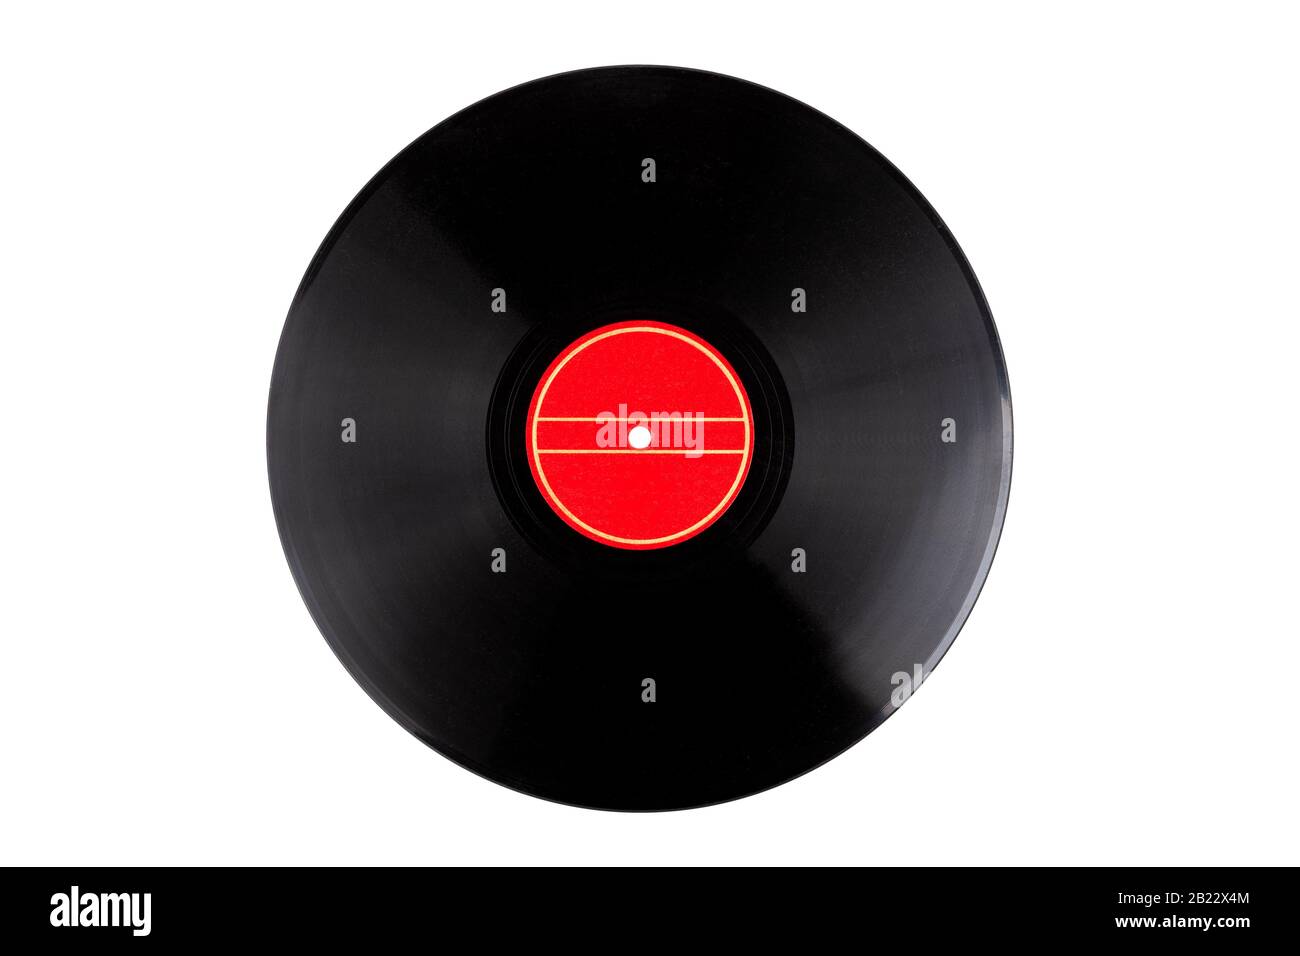 Modèle d'enregistrement en vinyle clair, simple et propre, disque avec une étiquette rouge vierge et vide isolée sur un espace de copie blanc. Conception en vinyle découpée Banque D'Images